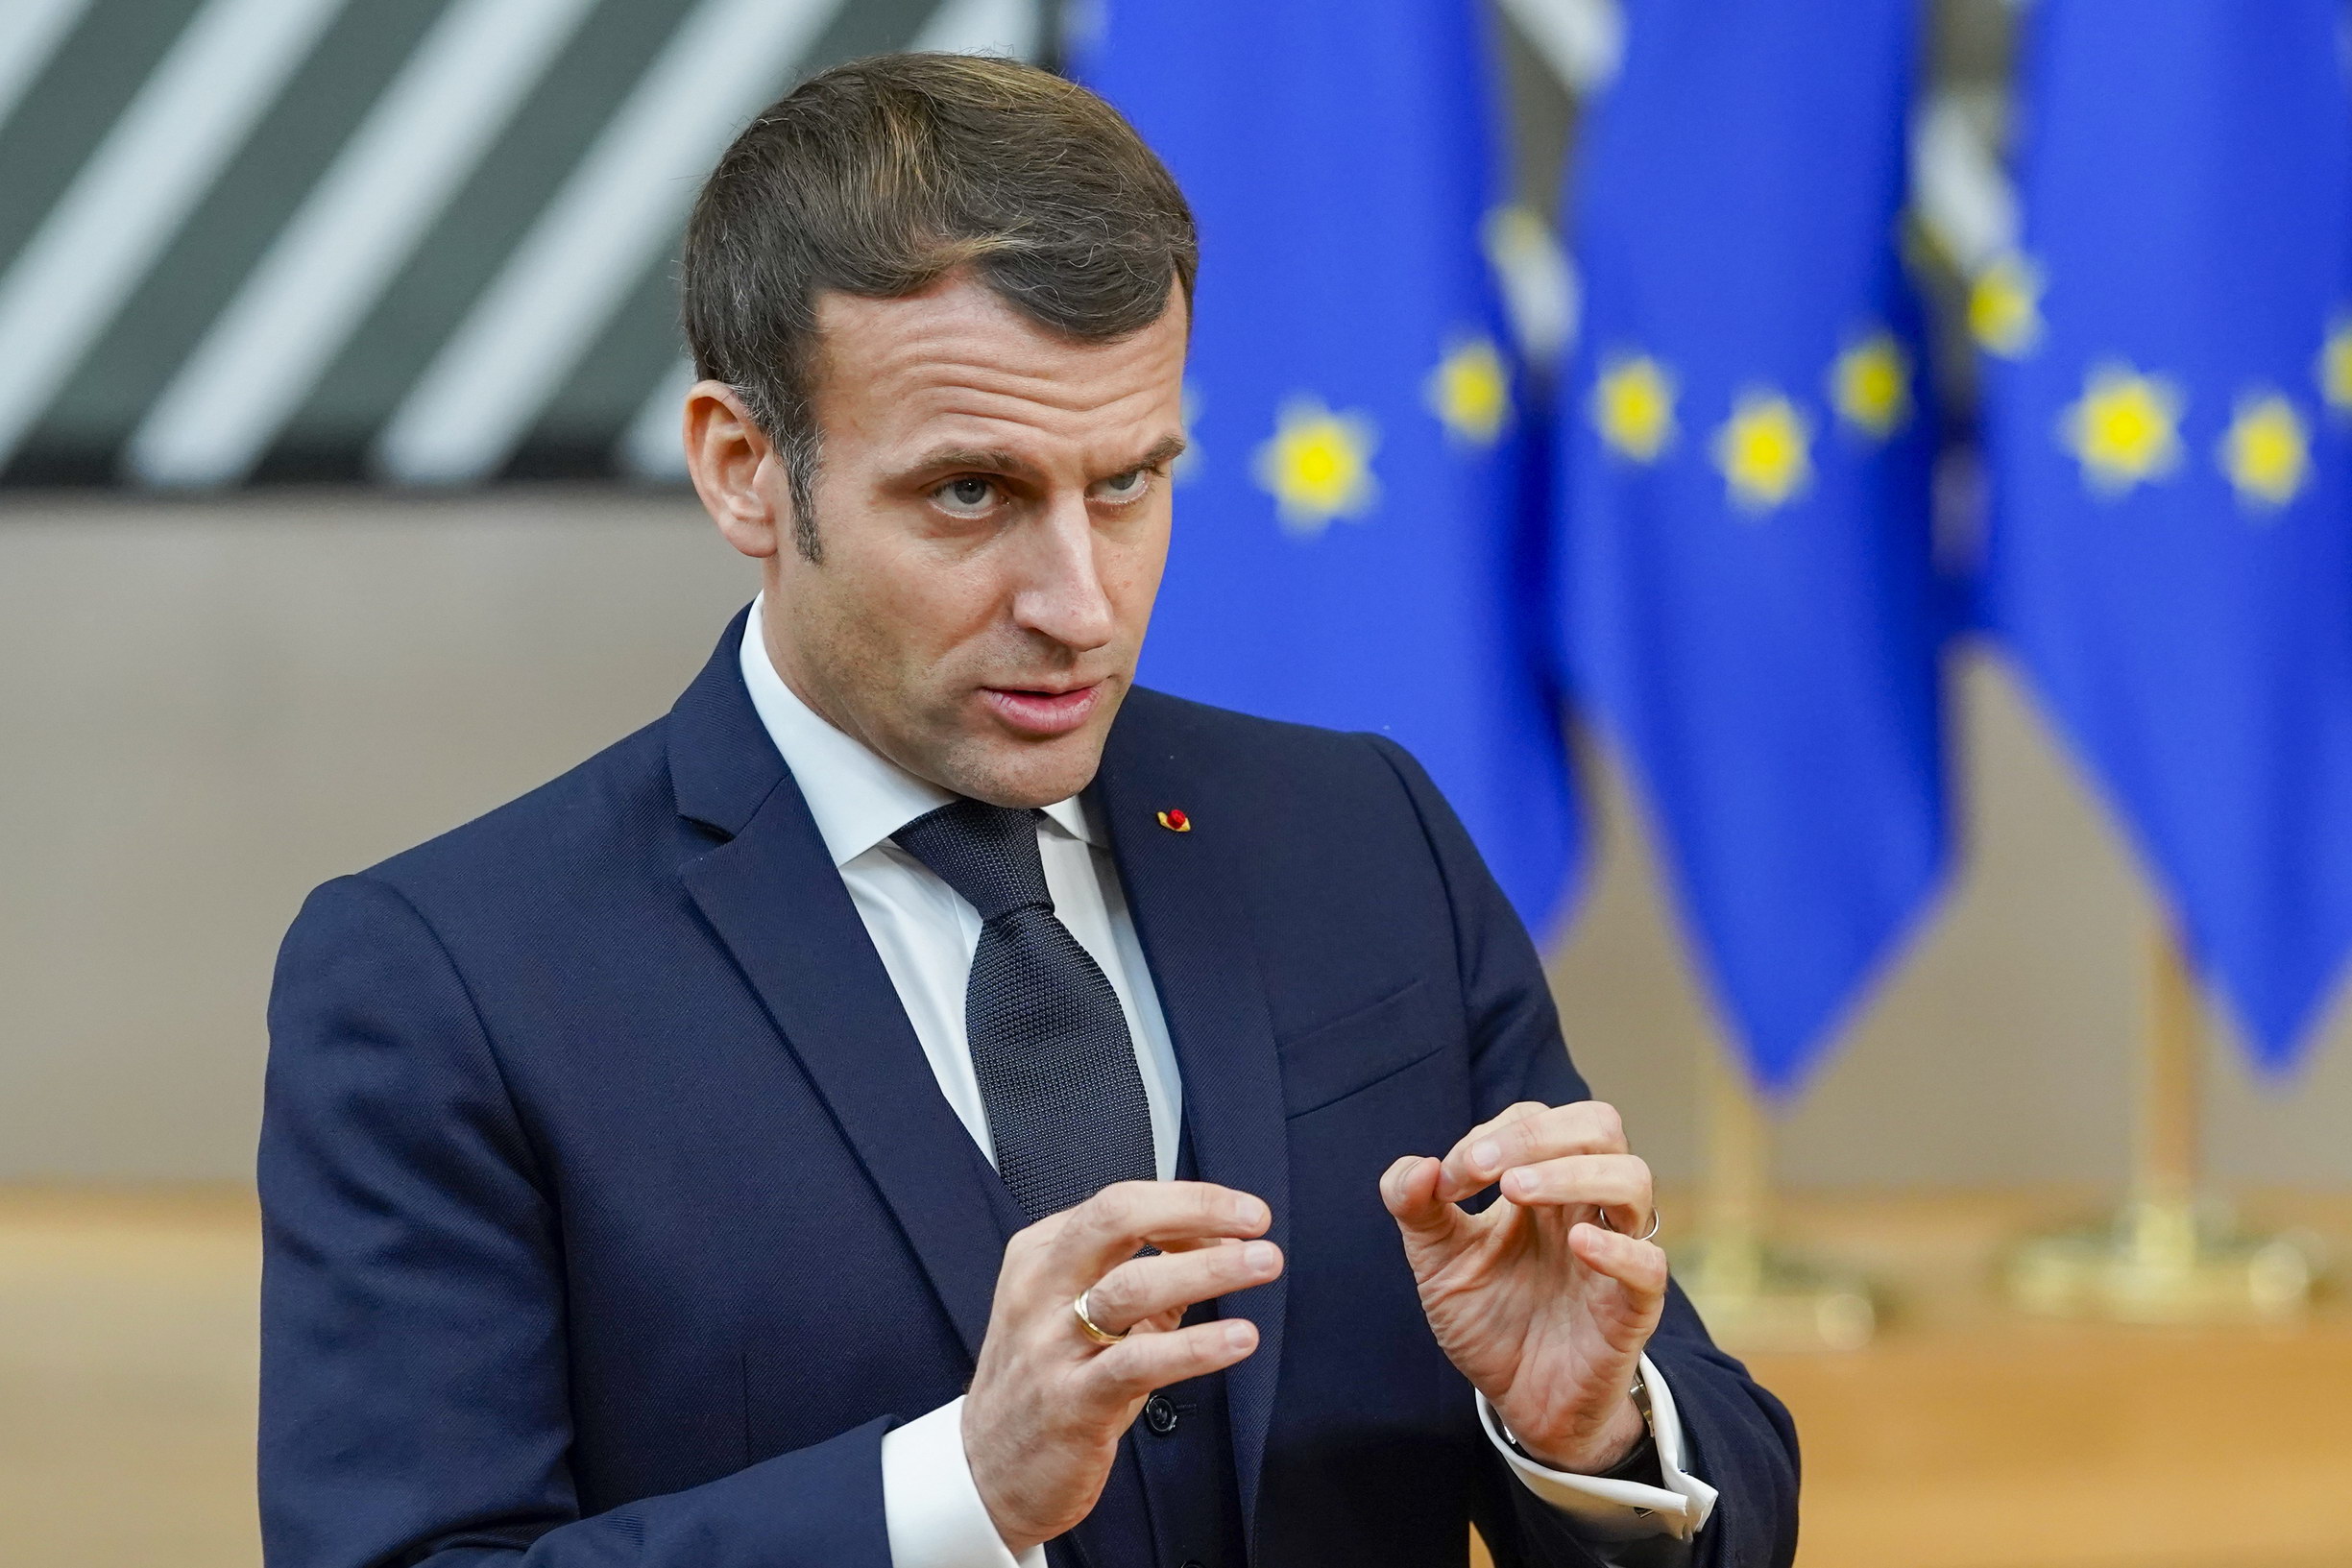 Francia: legge sul separatismo “rischia di minare le libertà fondamentali”